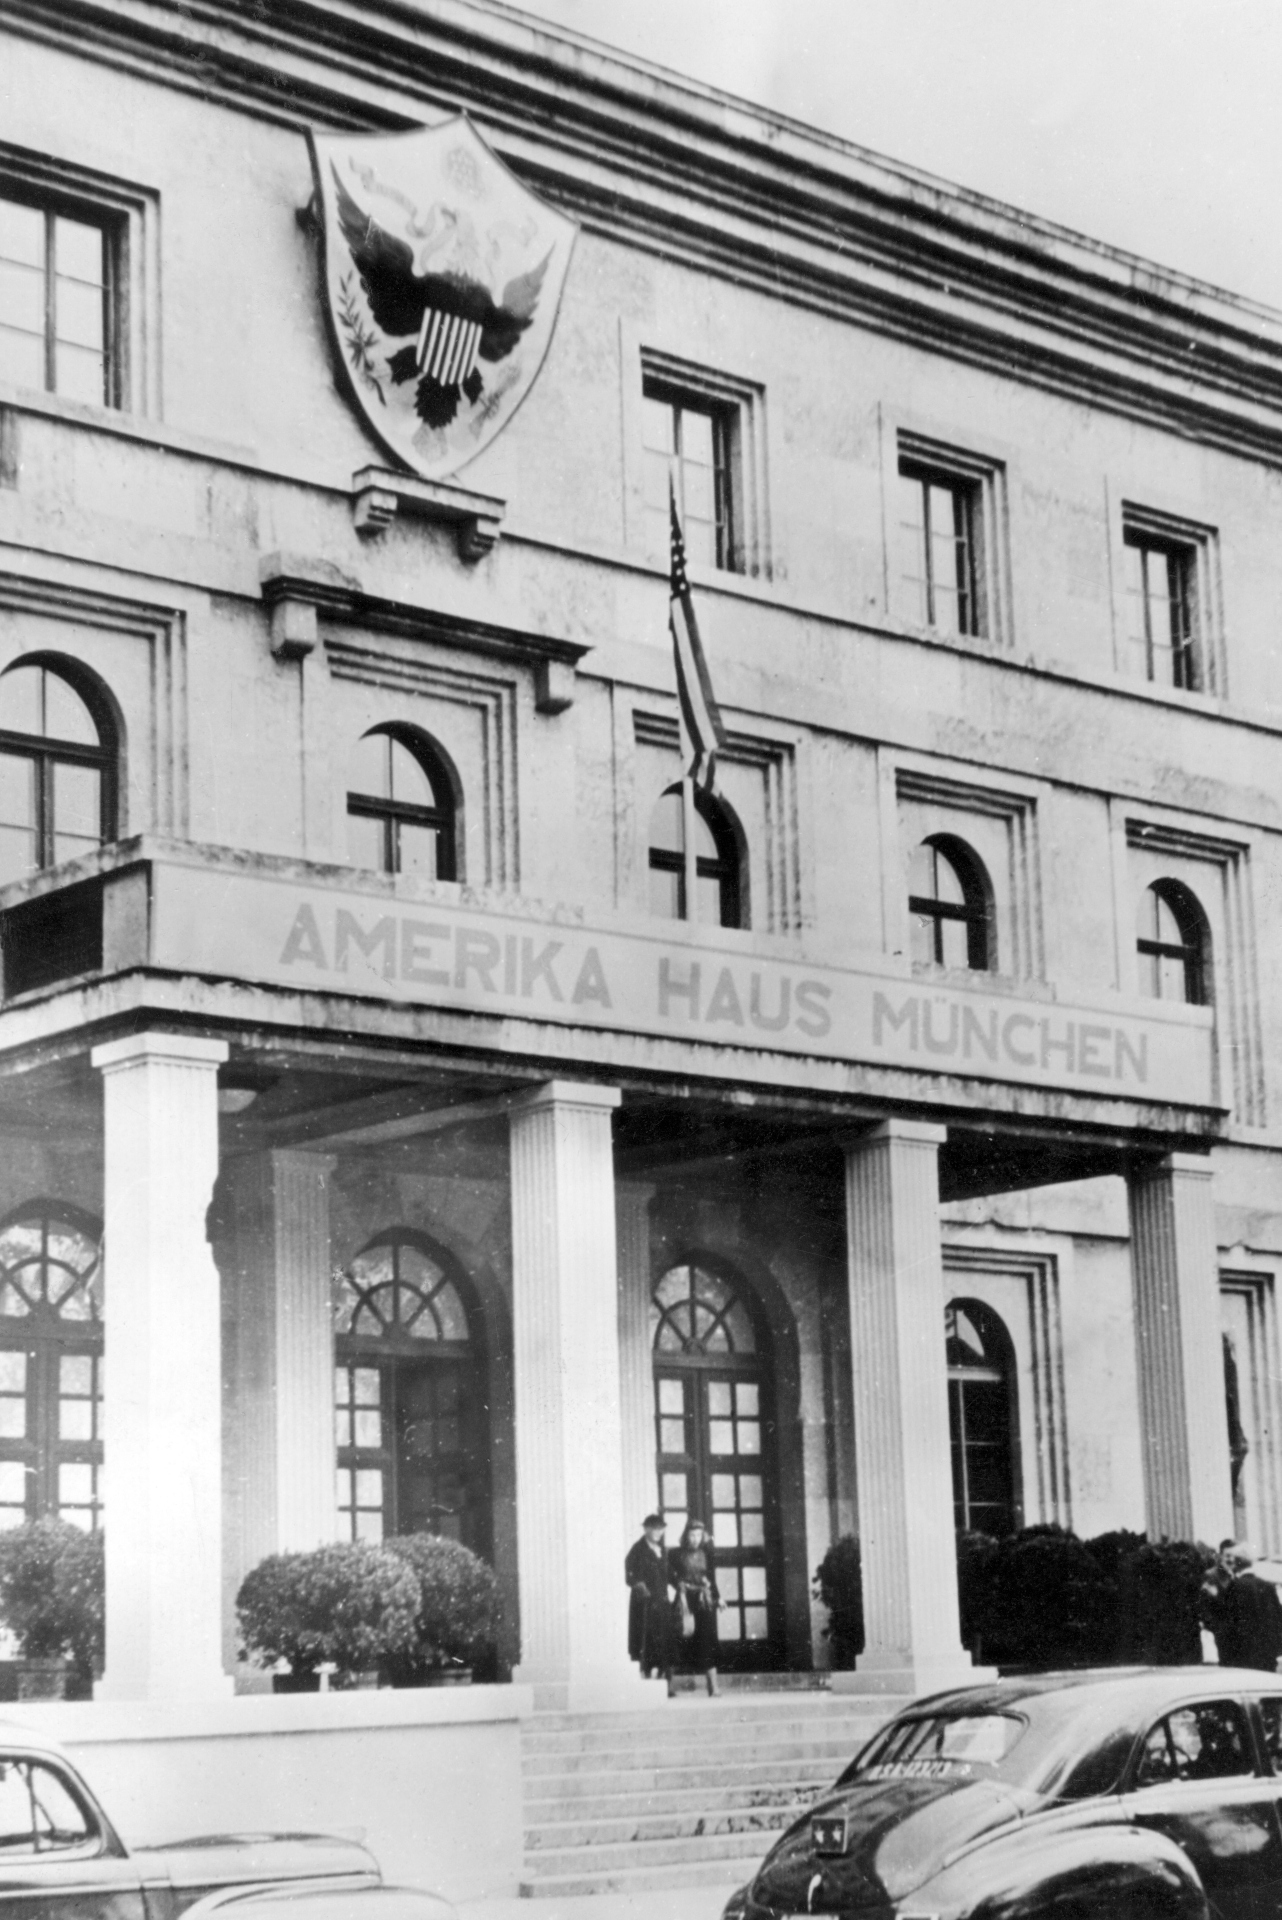 Blick von der Straße auf die Frontfassade eines dreistöckigen Gebäudes Über dem Säuleneingang steht „Amerika Haus München“, darüber hängt die Flagge der USA.